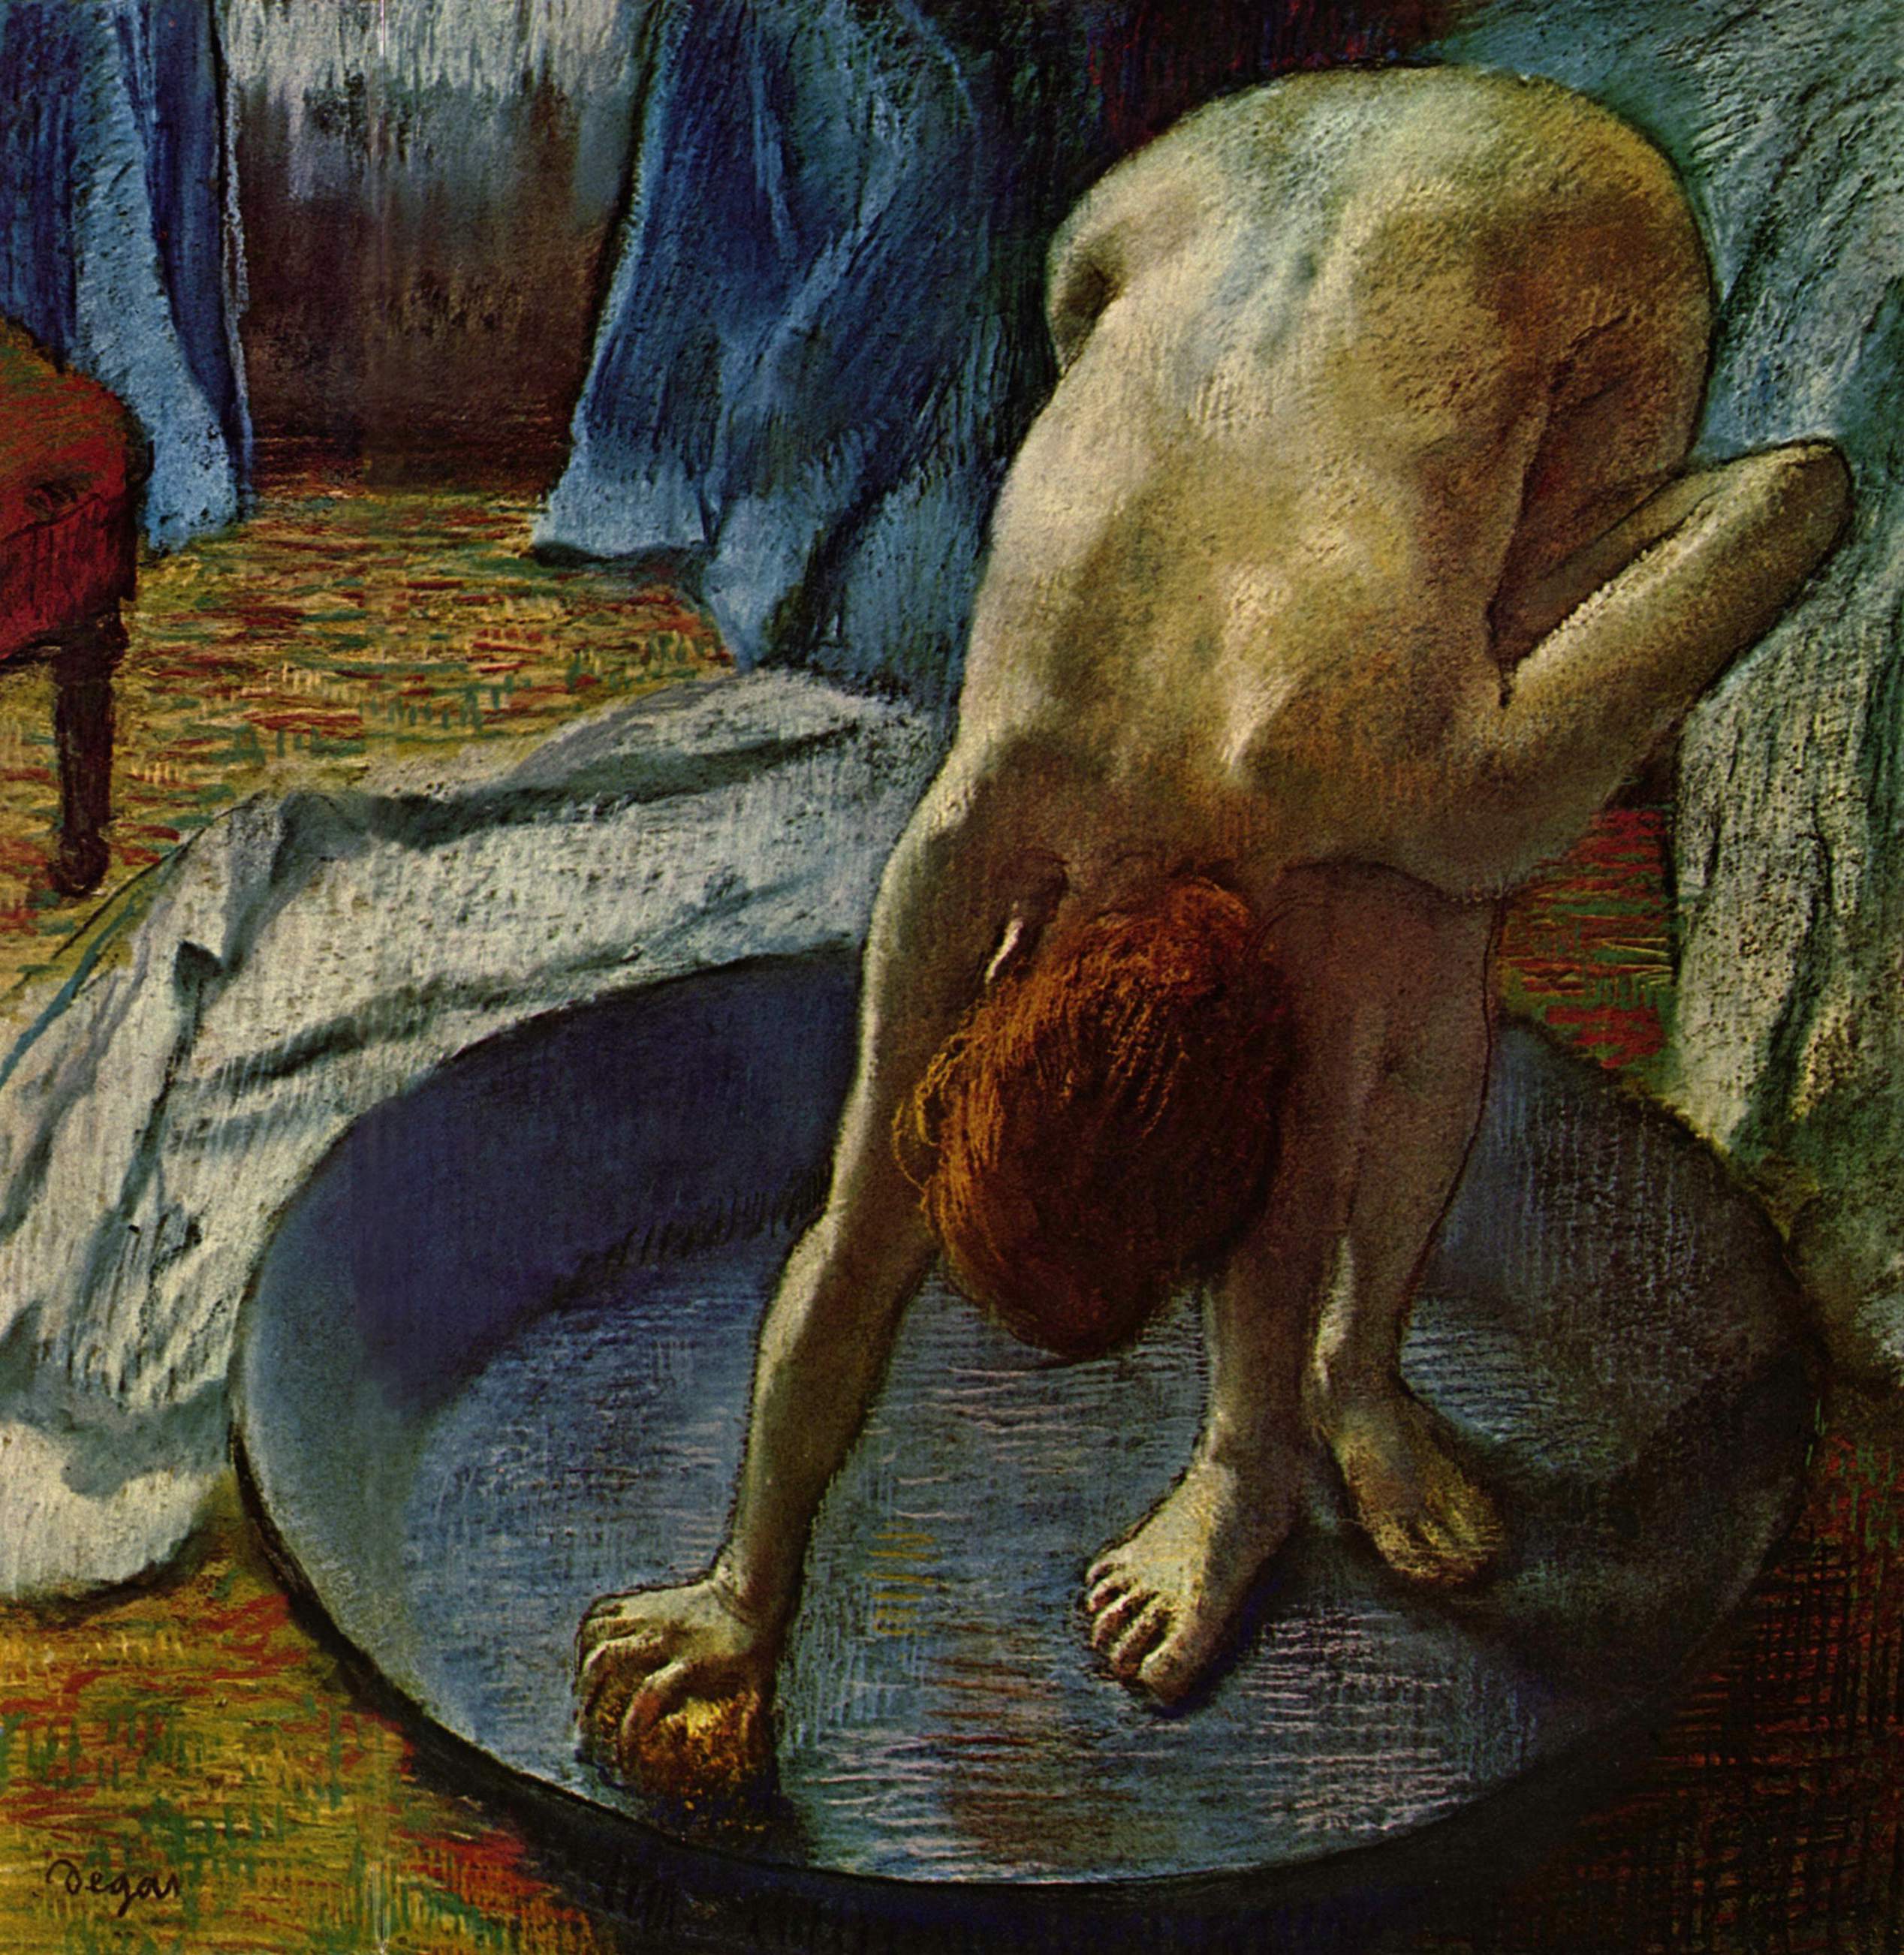 洗澡的女人 by Edgar Degas - 1886 - 69.9 x 69.9 cm 